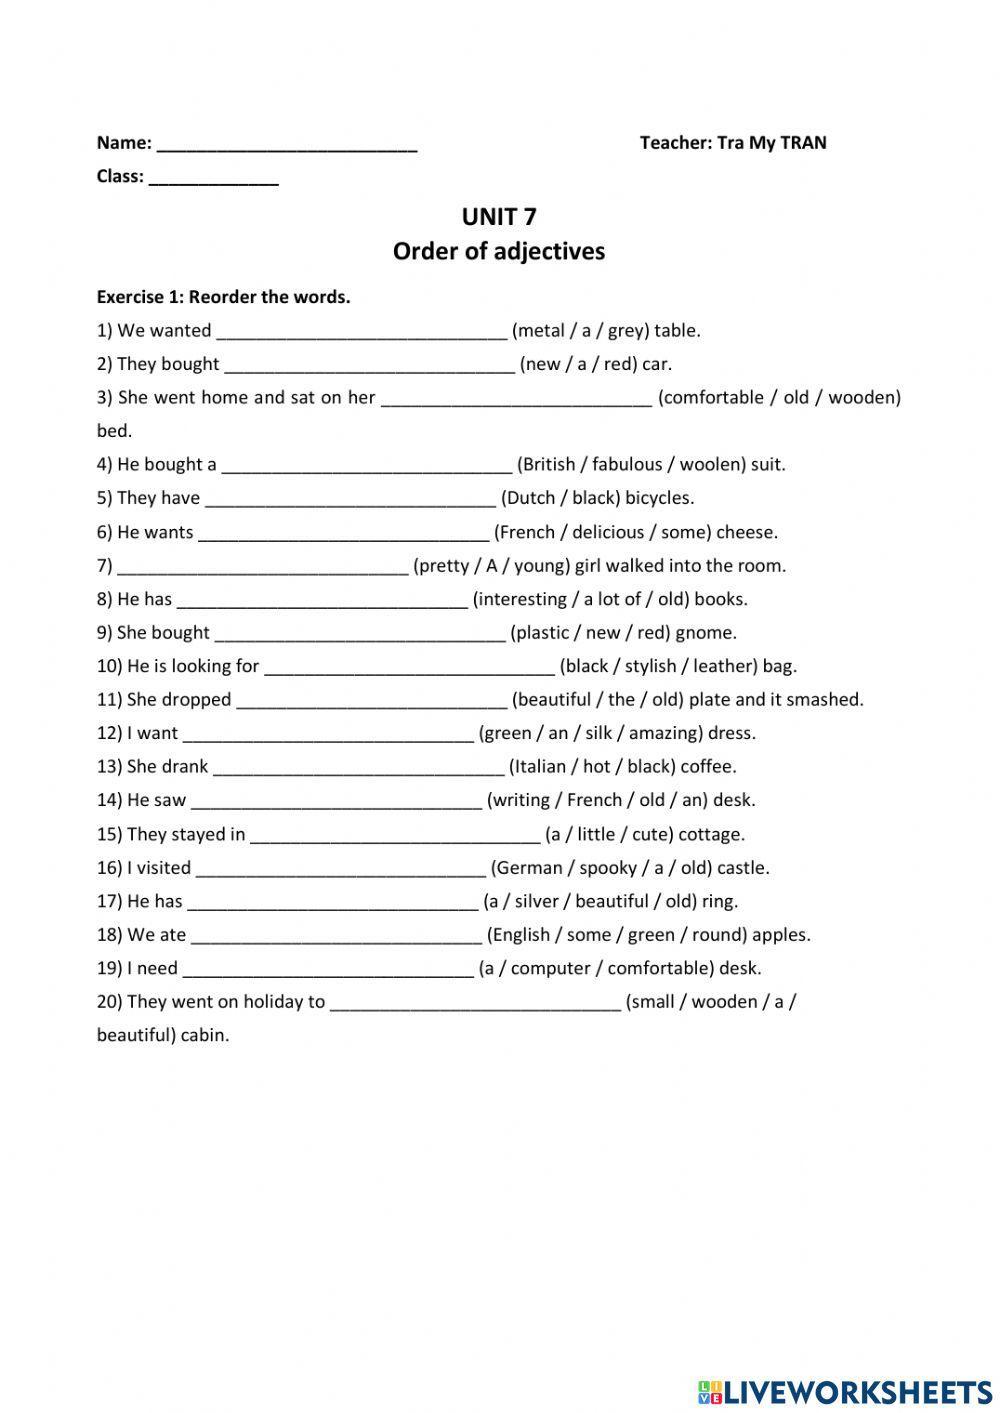 GE3 - U7 - Order of adjectives